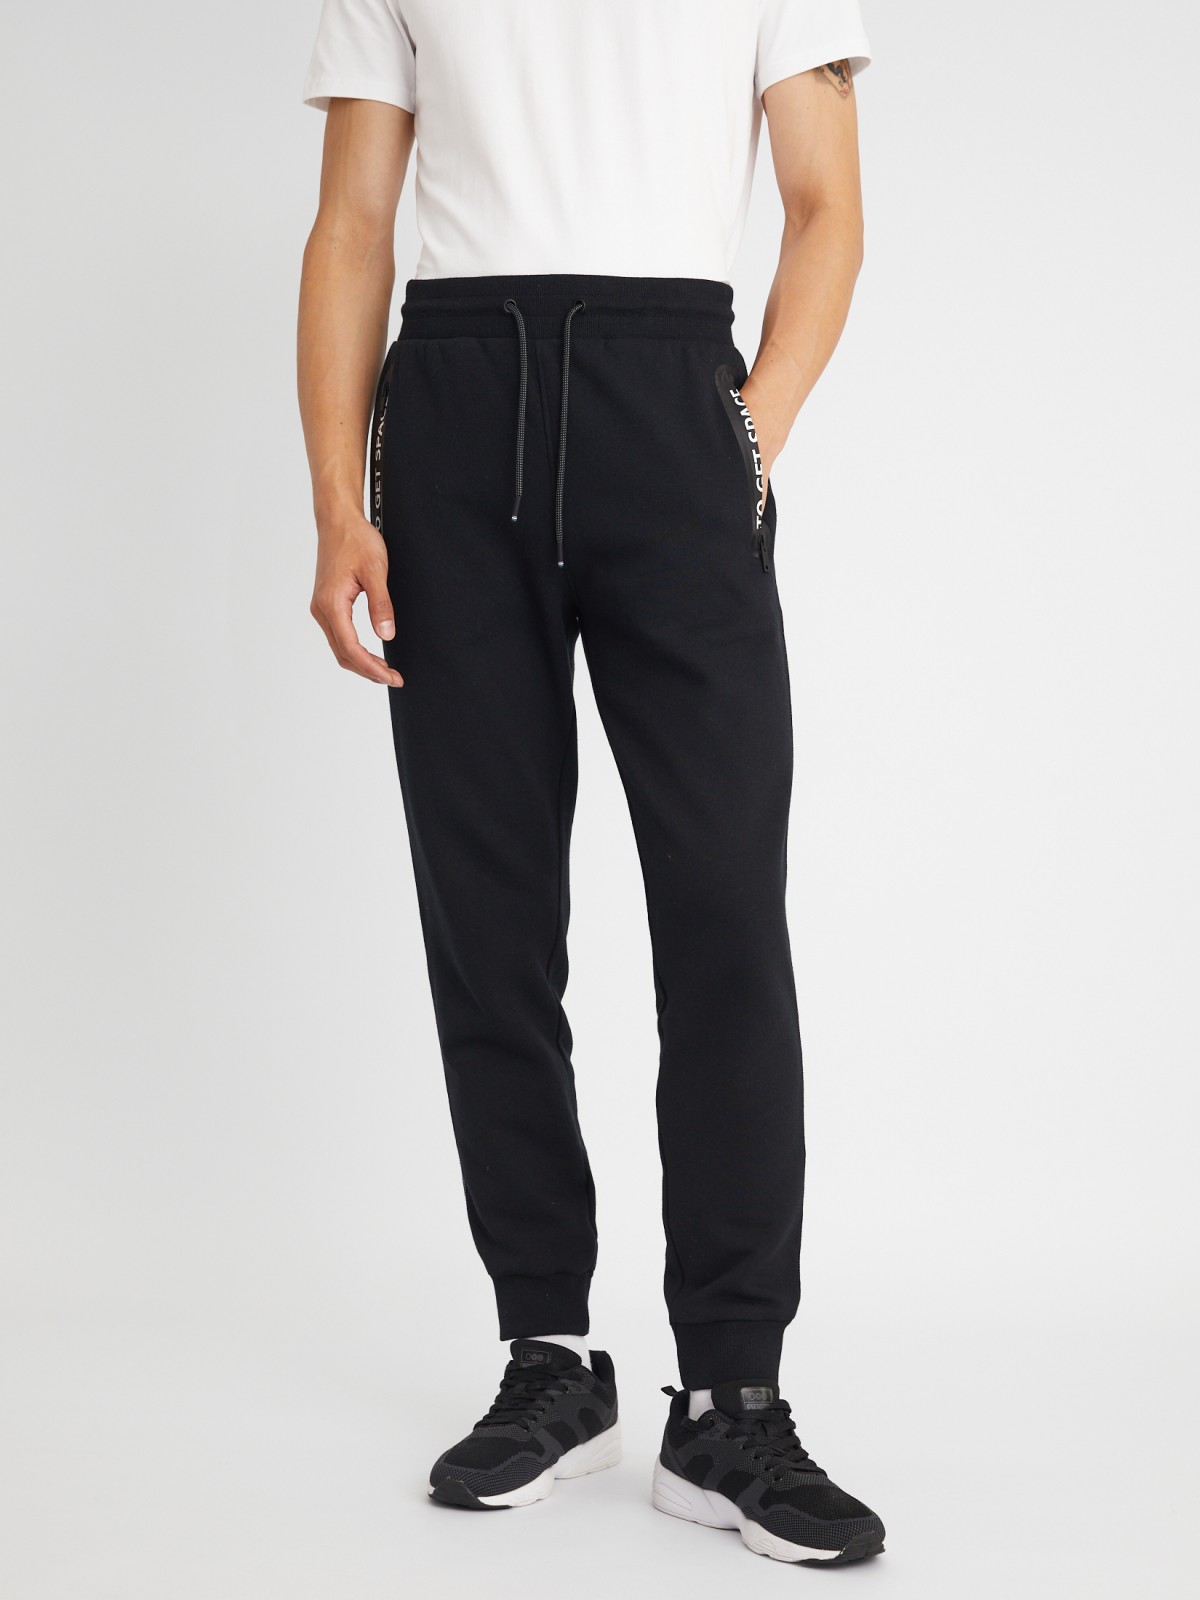 Утеплённые трикотажные брюки-джоггеры в спортивном стиле с принтом zolla 213337679051, цвет черный, размер S - фото 2